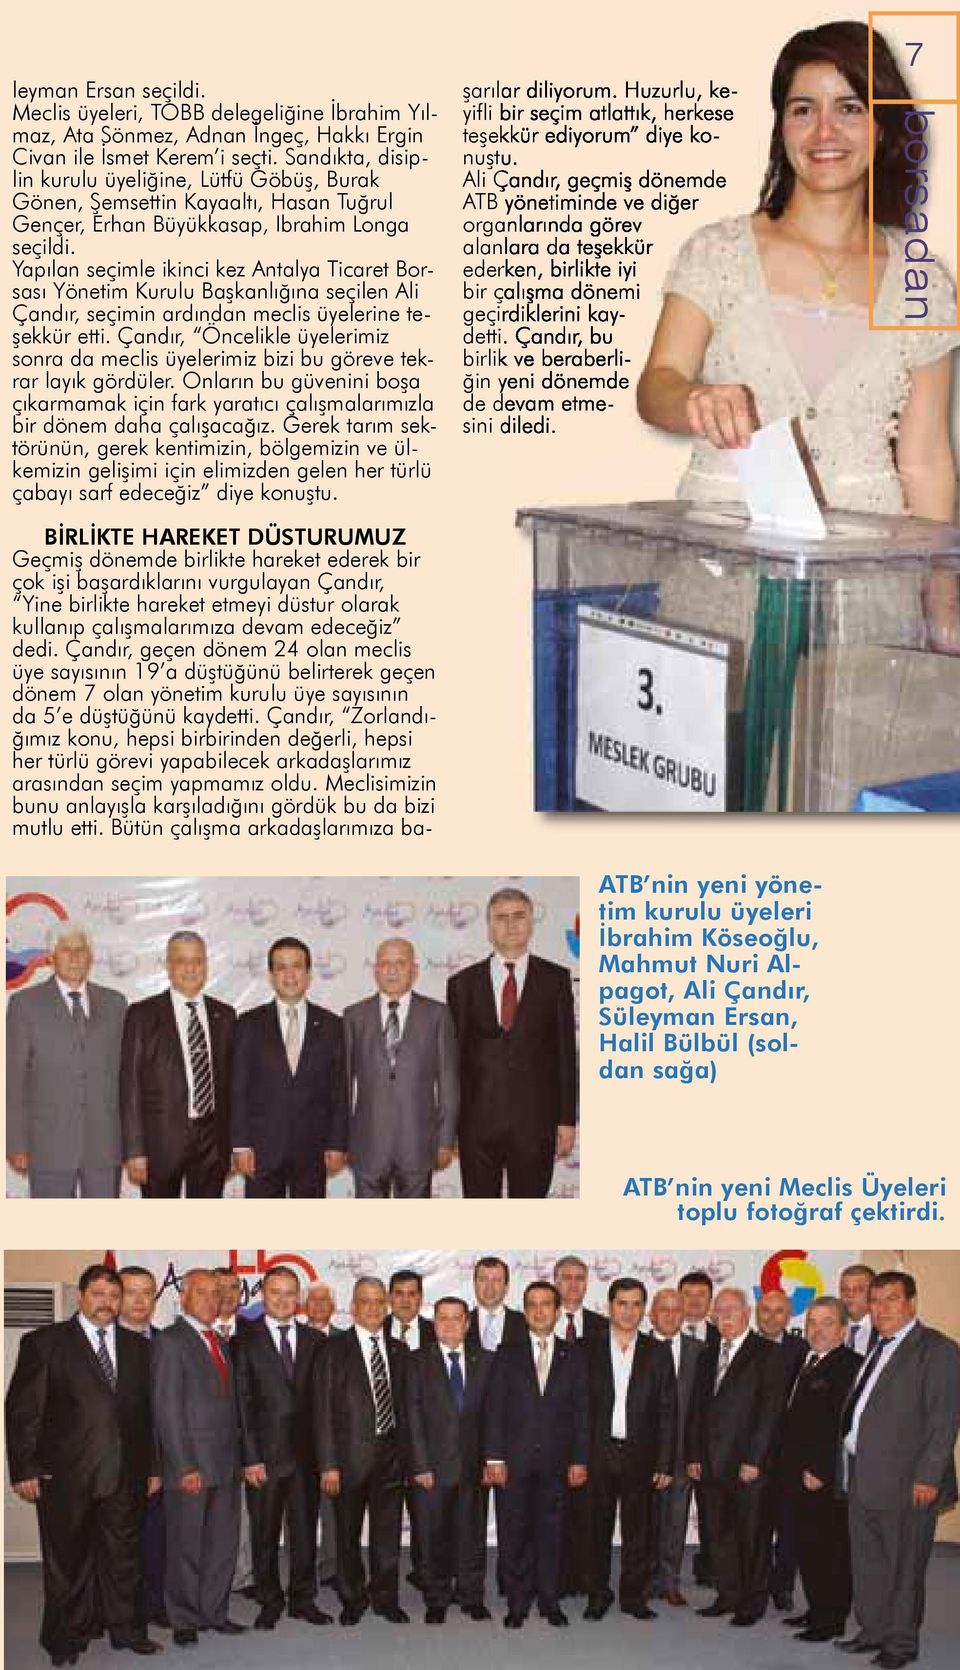 Yapılan seçimle ikinci kez Antalya Ticaret Borsası Yönetim Kurulu Başkanlığına seçilen Ali Çandır, seçimin ardından meclis üyelerine teşekkür etti.